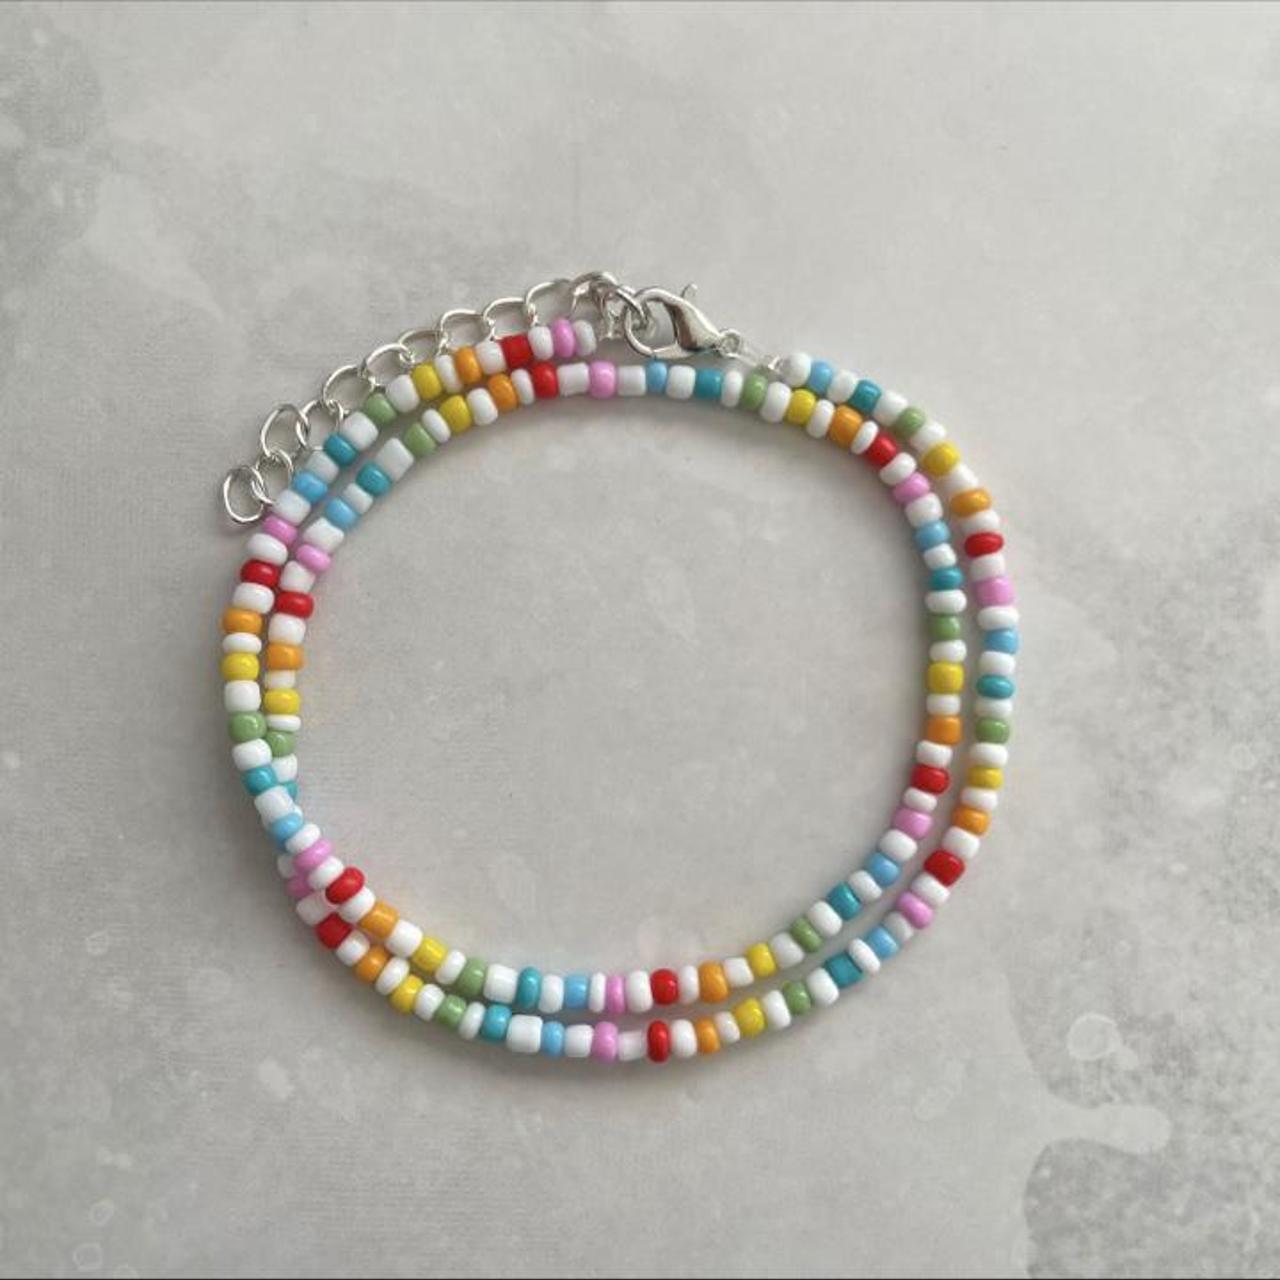 Product Image 1 - Rainbow beaded necklace 
Gorgeous rainbow